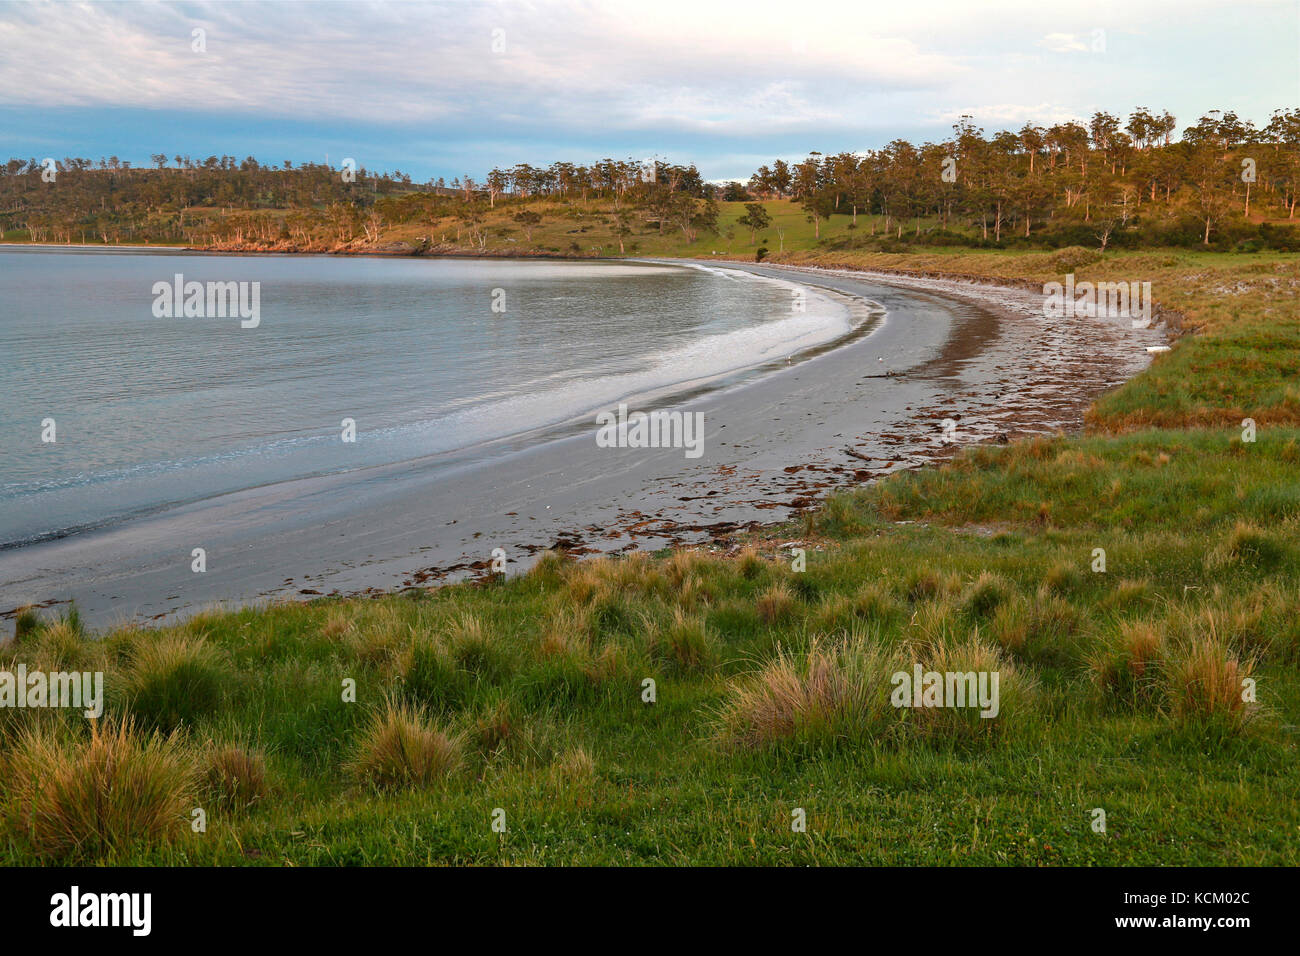 Okehampton Bay, site d'une expansion controversée de l'industrie salmonicole de Tasmanie. Tasmanie, Australie Banque D'Images